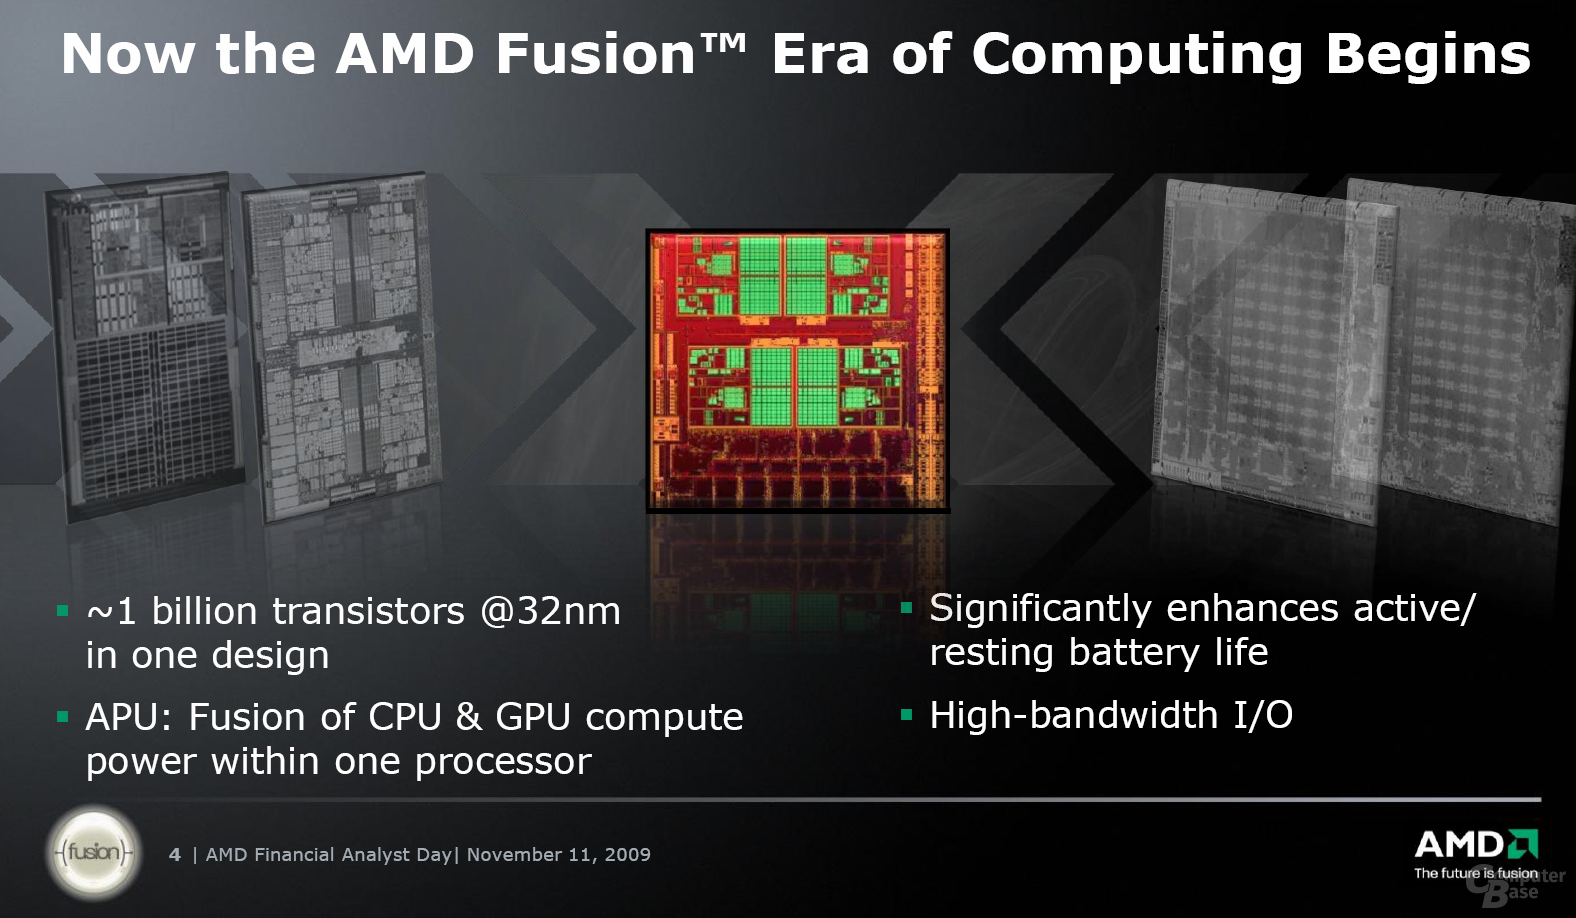 AMDs Fusion